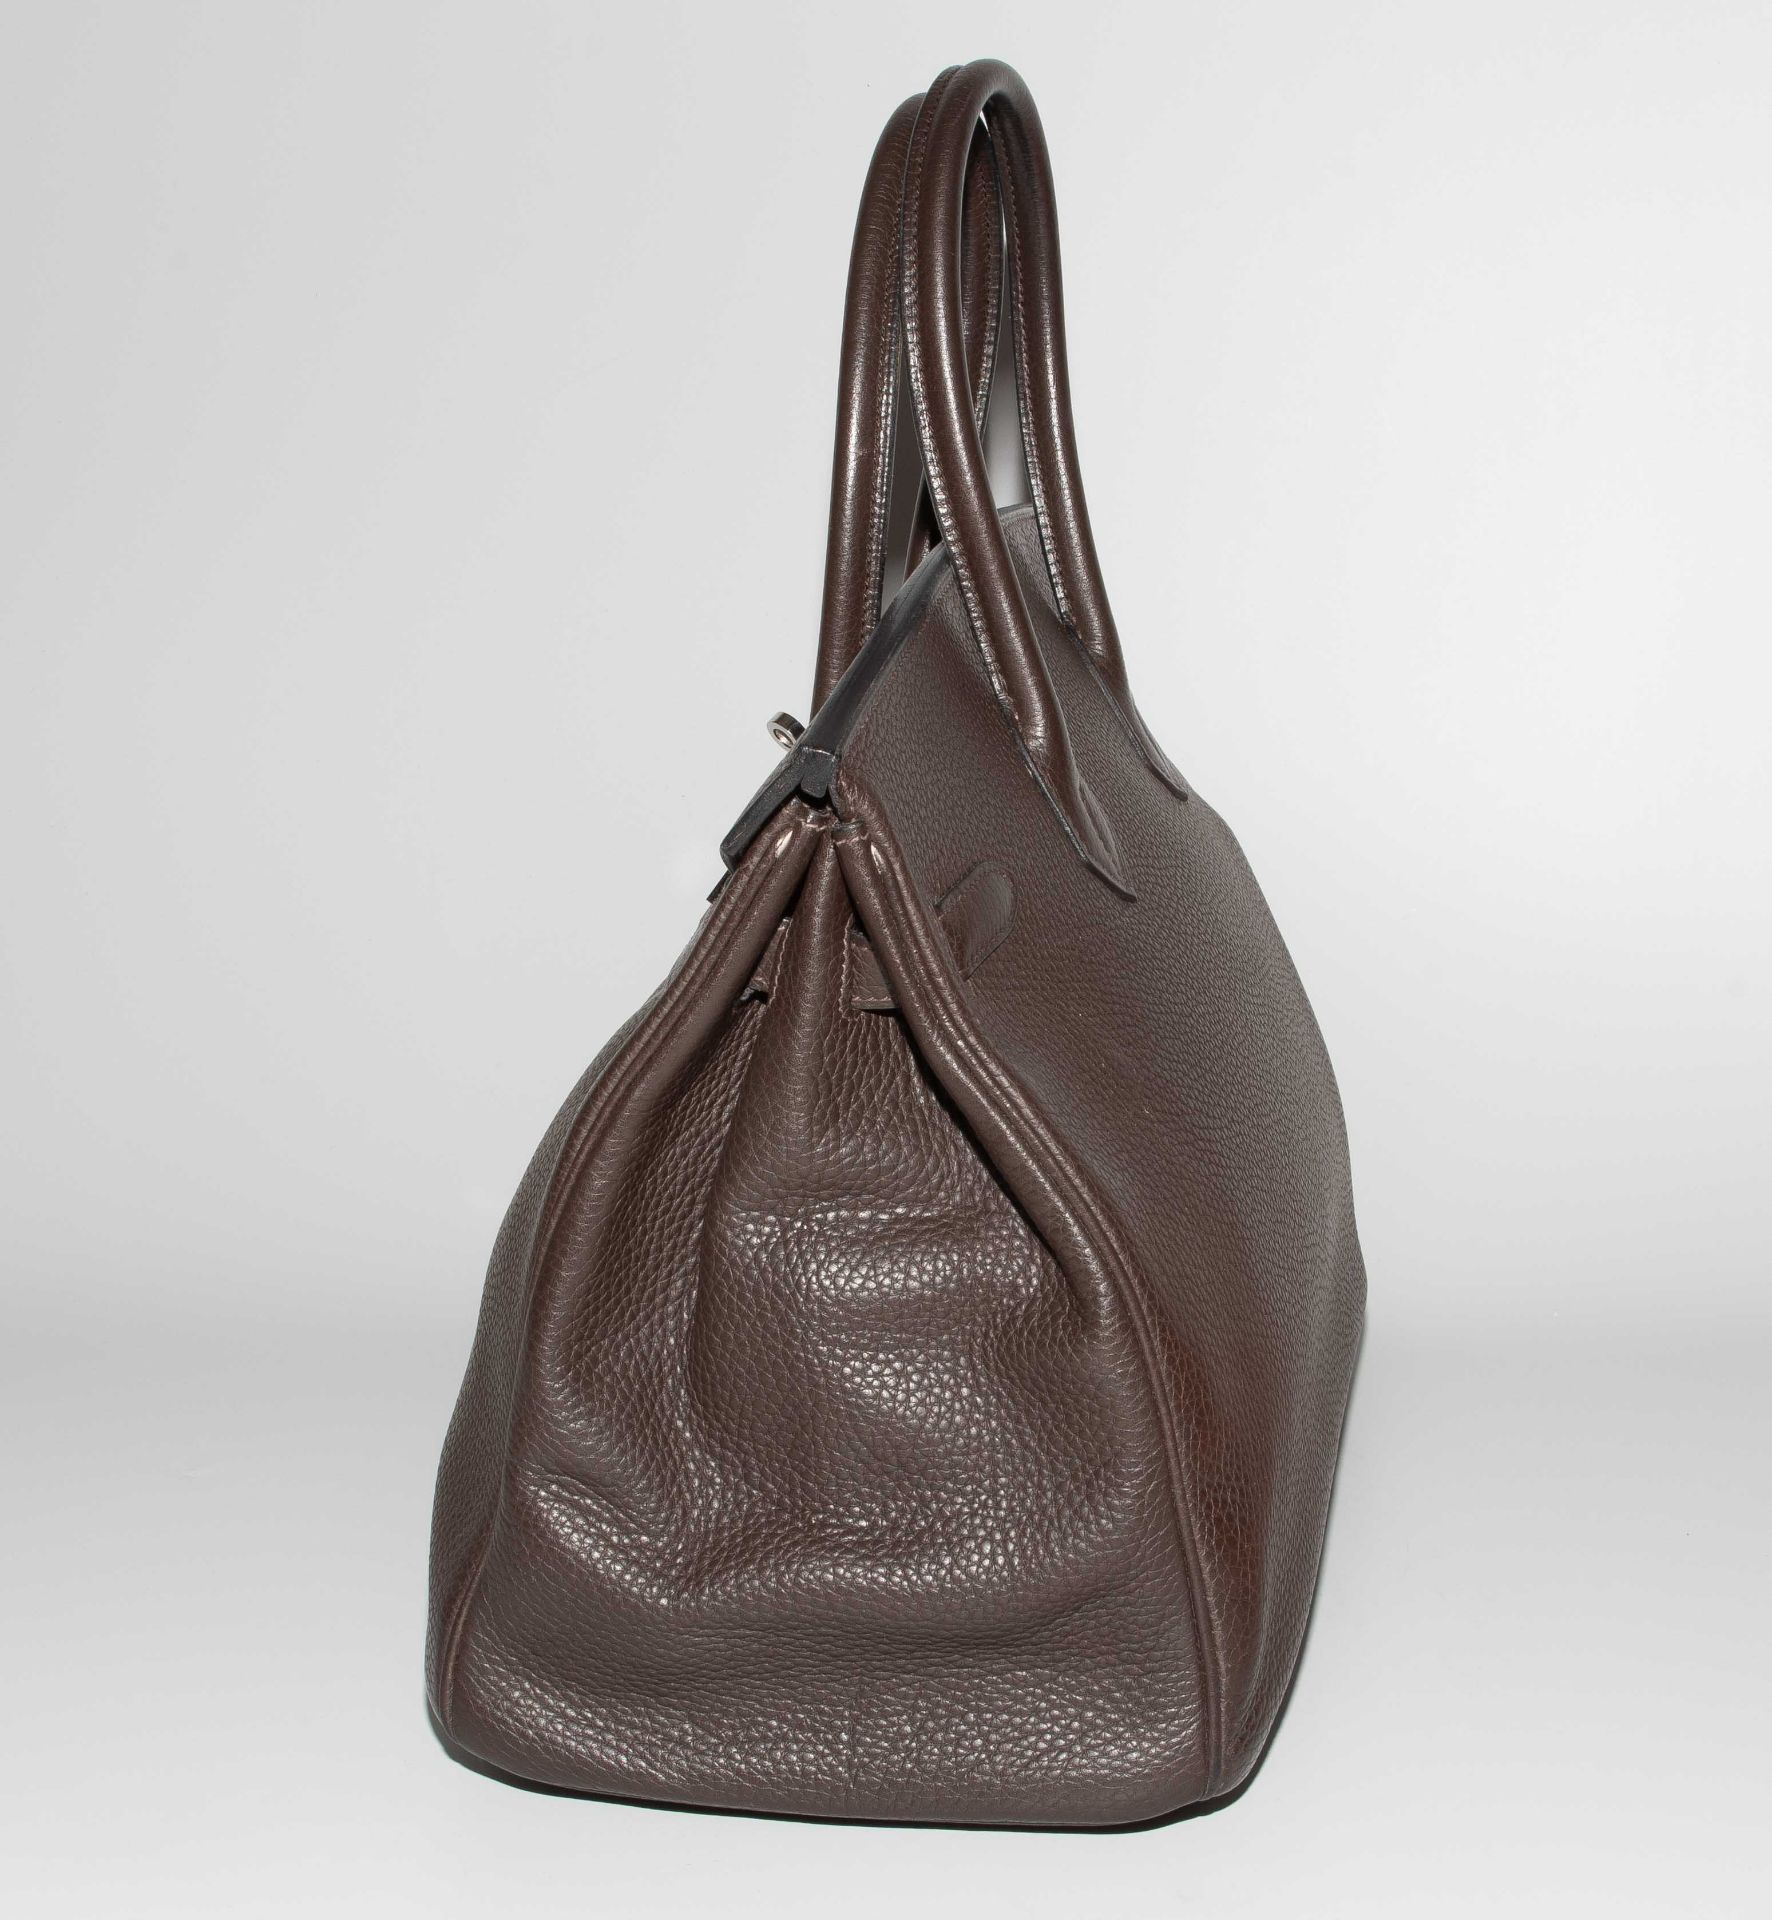 Hermès, Handtasche "Birkin" 35 cm - Image 5 of 13